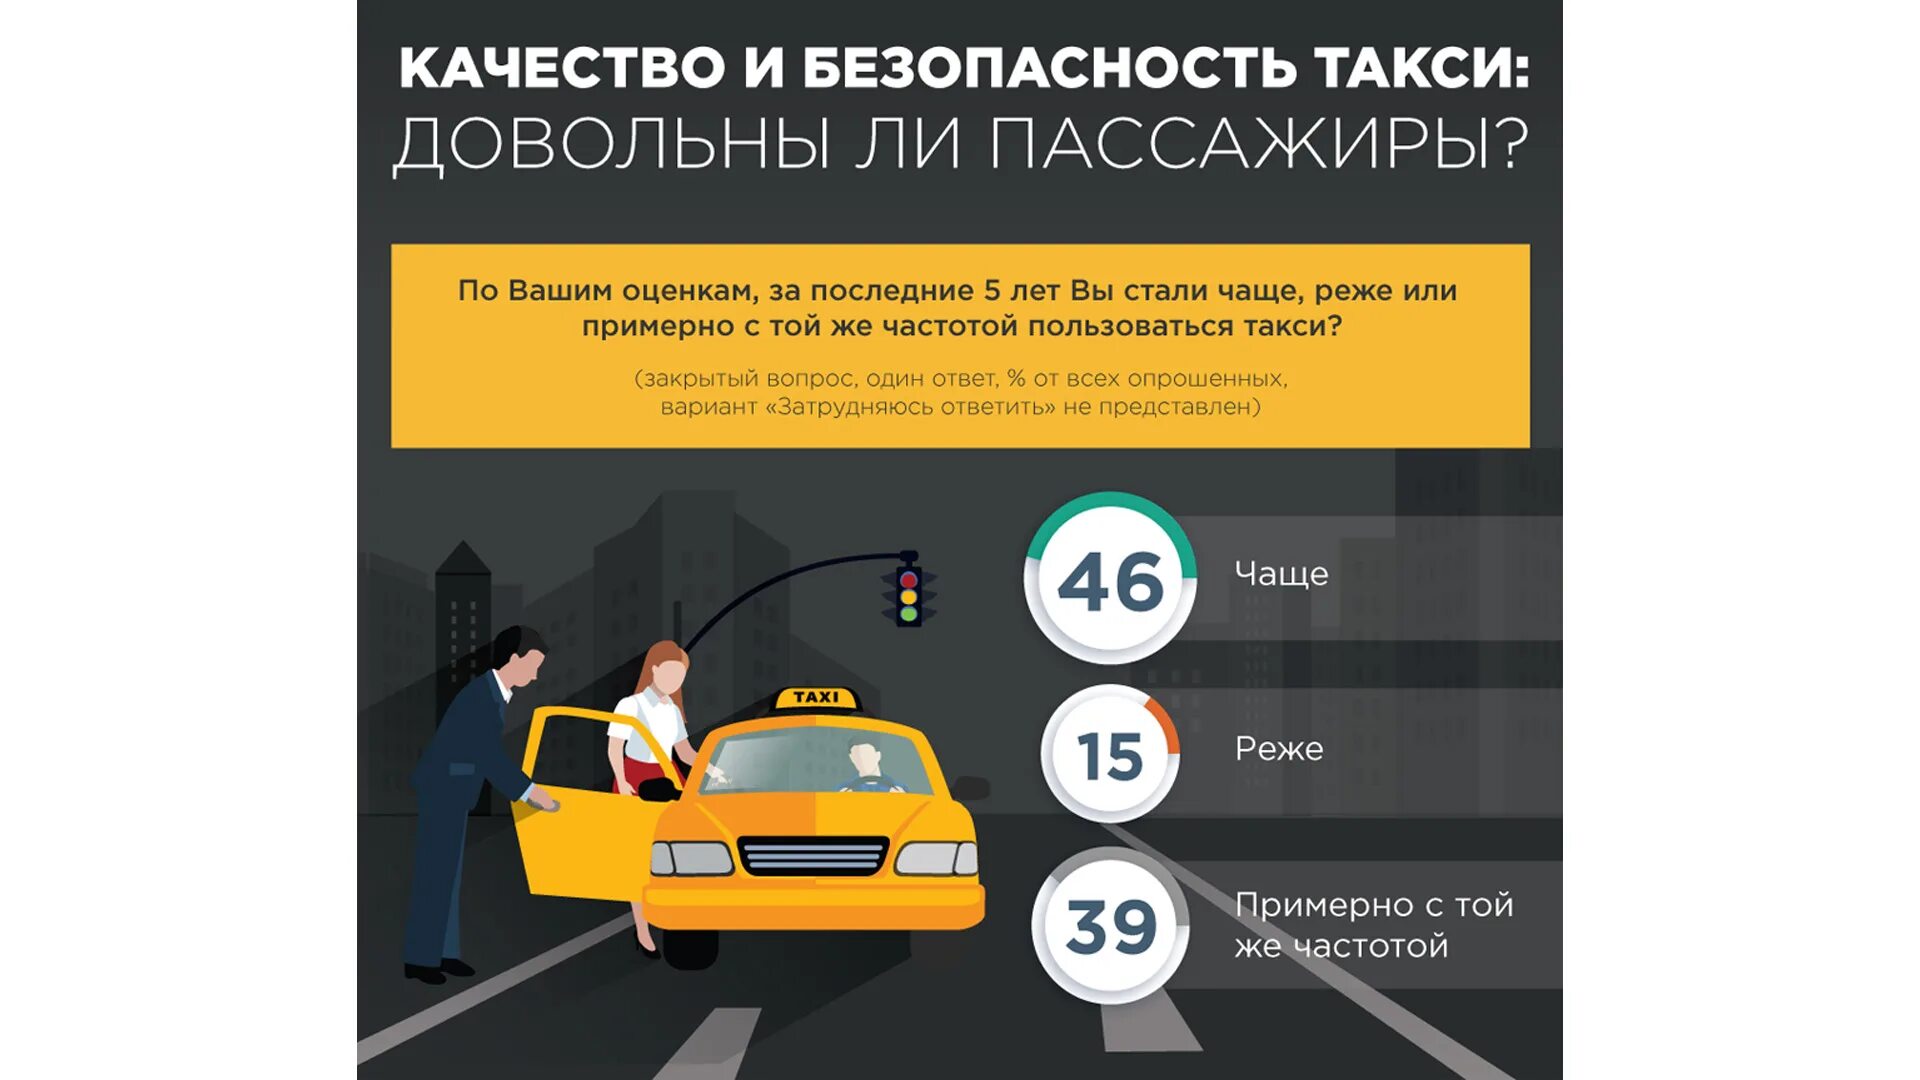 Безопасность в такси. Инфографика такси. Безопасность пассажира в такси. Безопасность клиента такси. Ответственность водителя такси